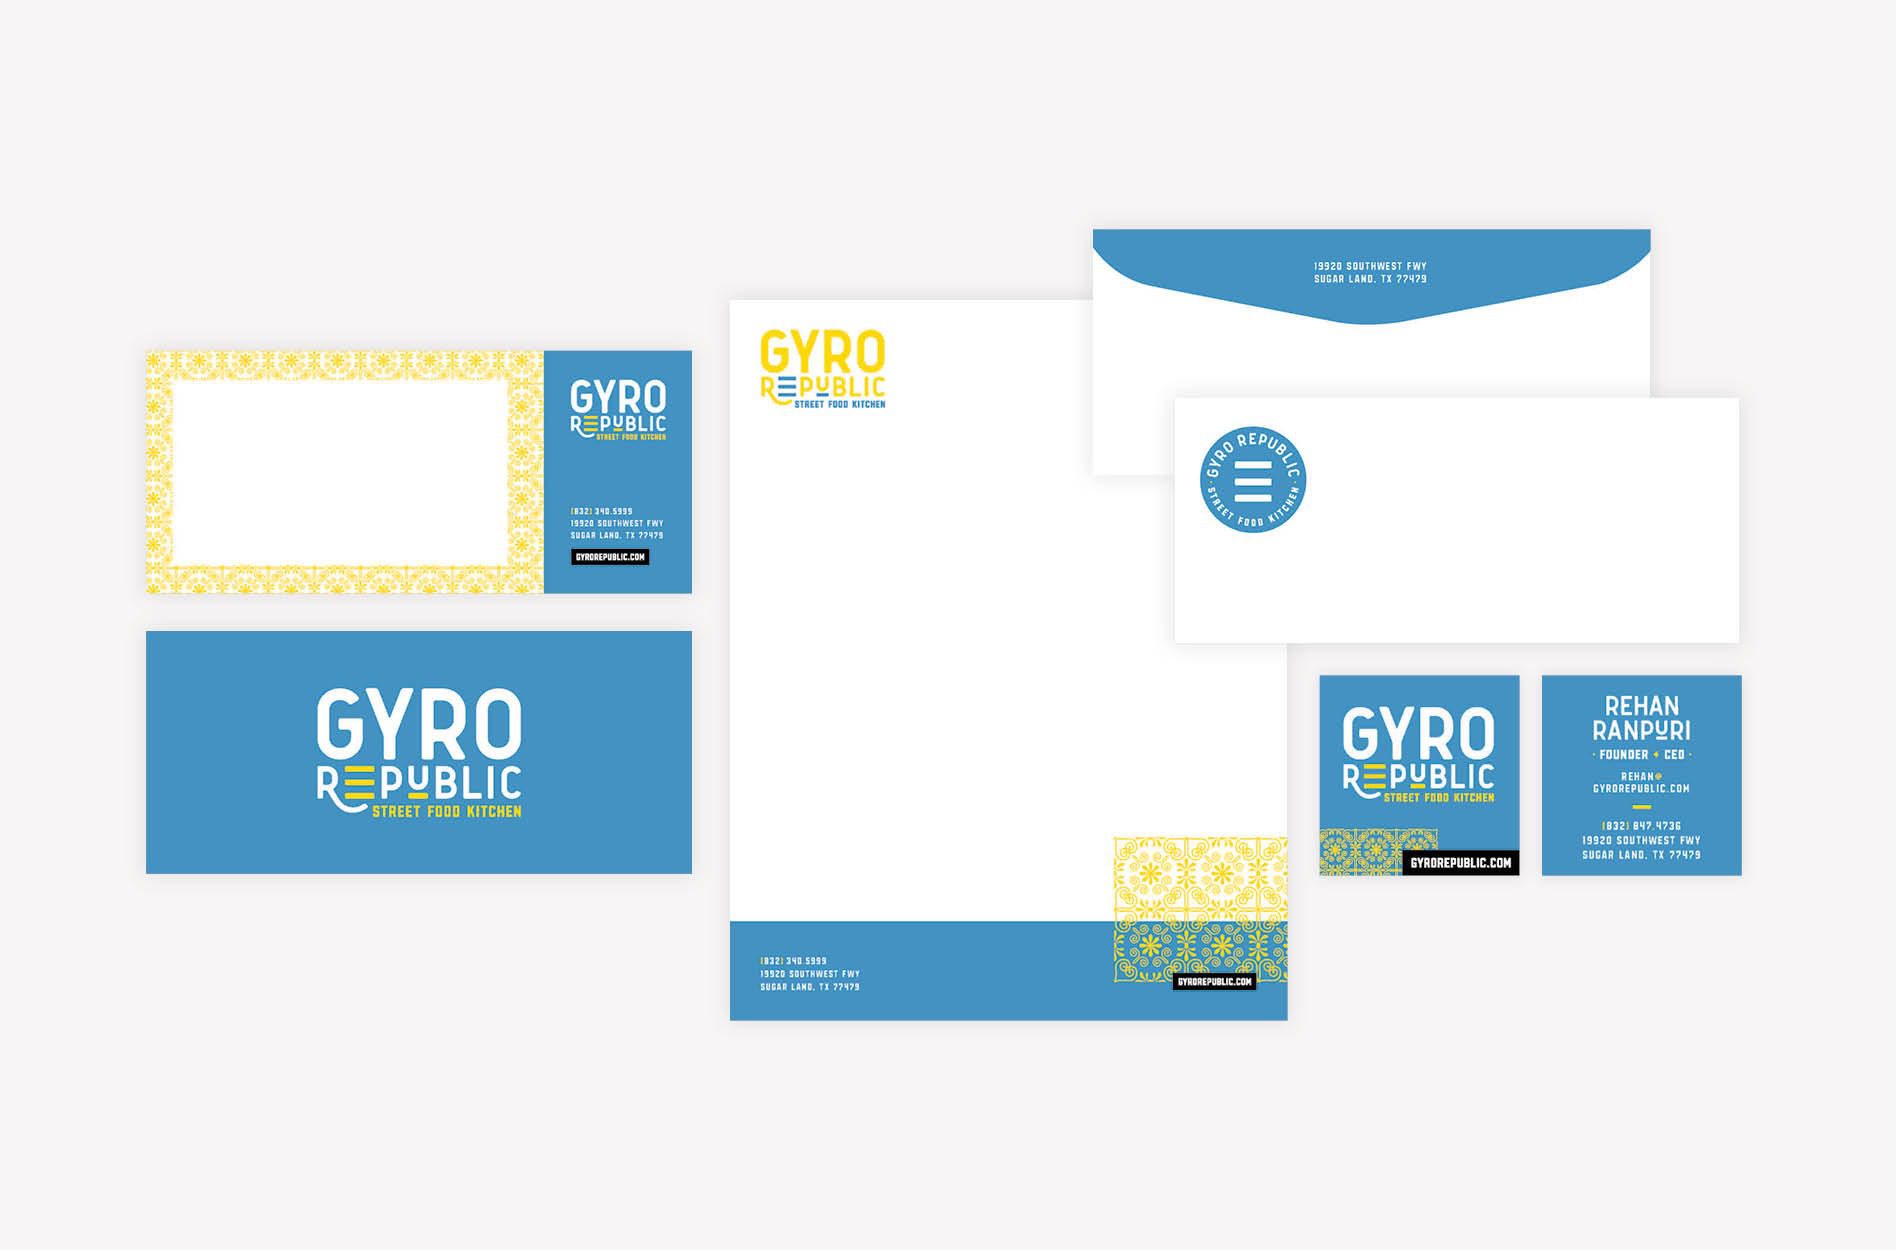 Gyro Republic - restaurant branding package design